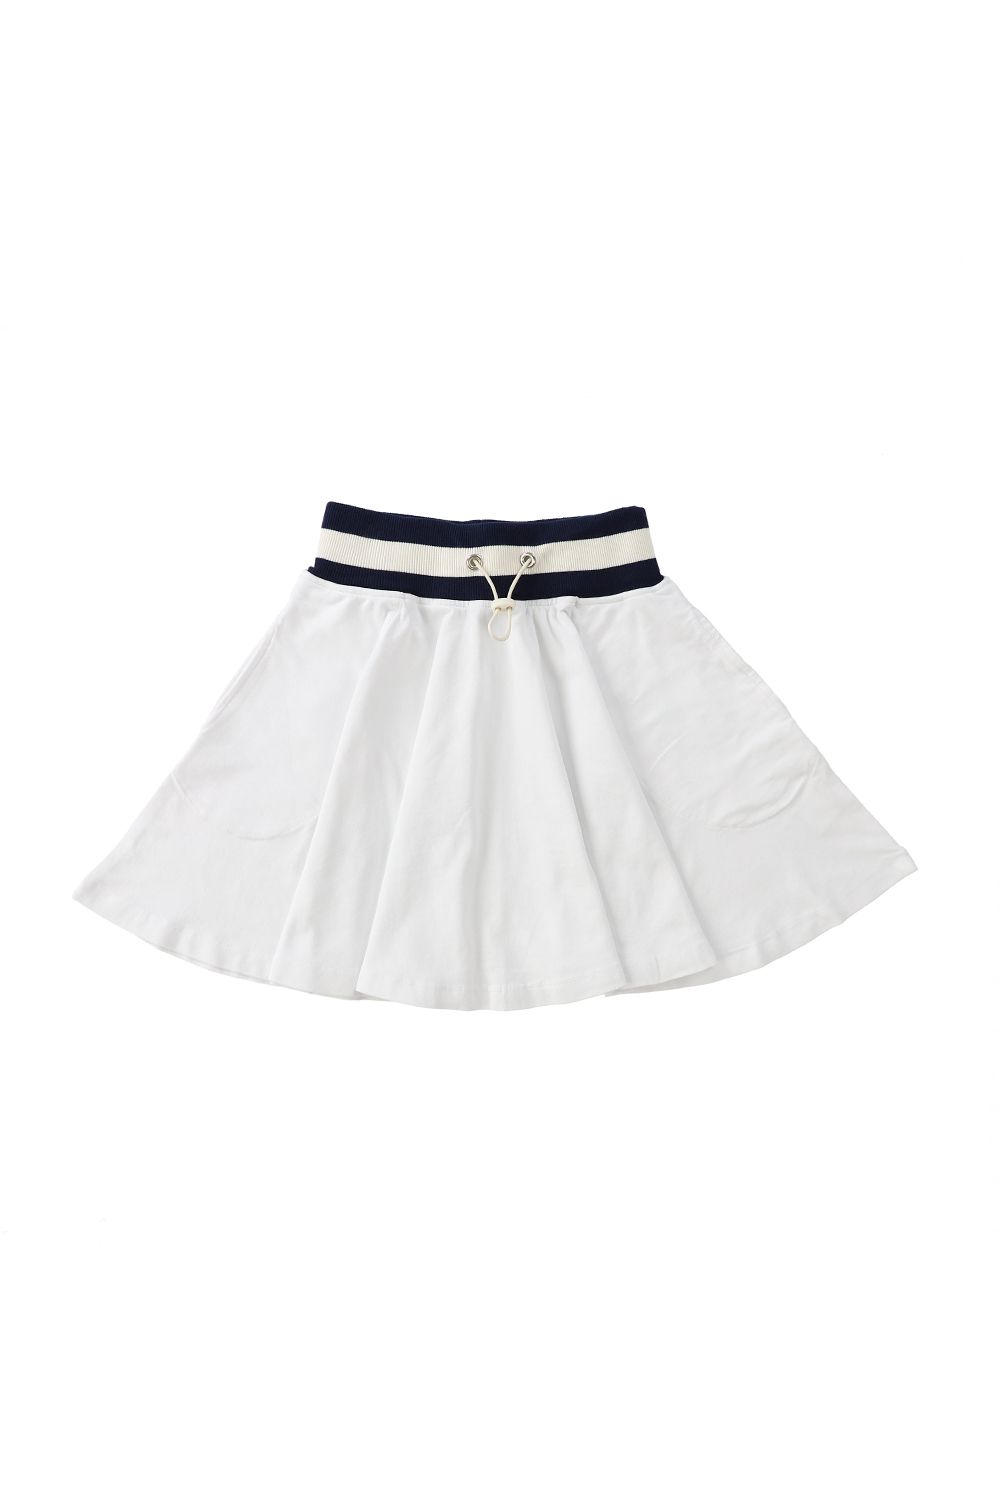 Ivory Menorca Skirt